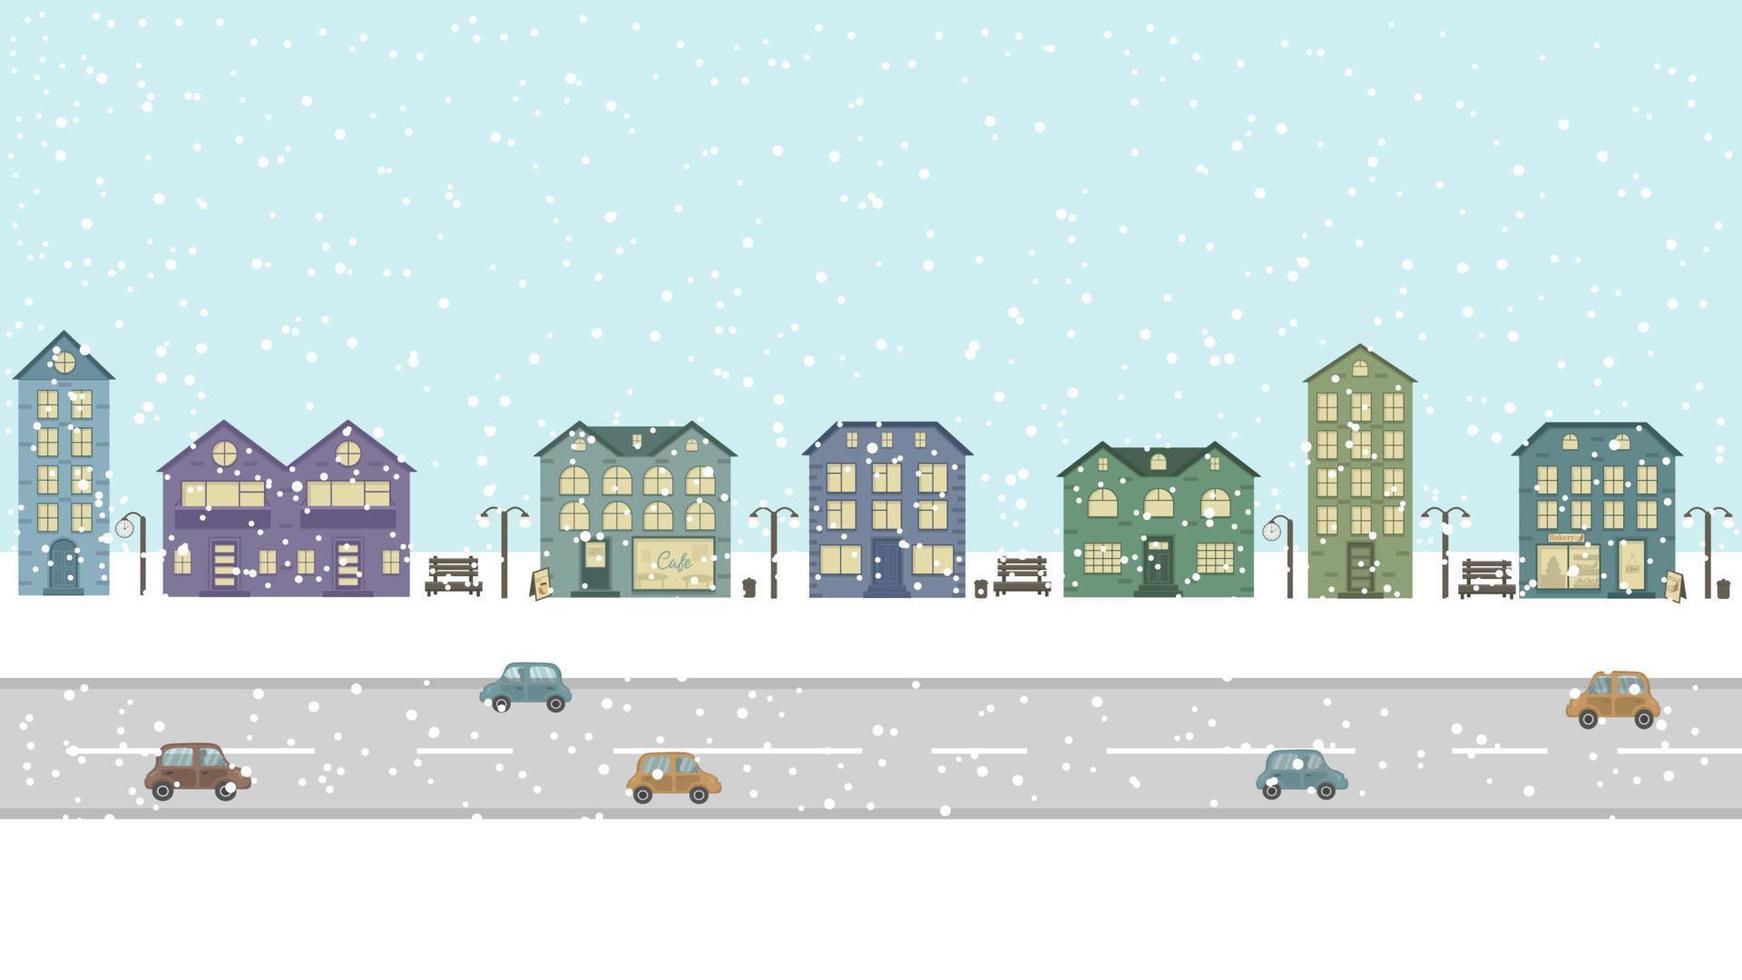 panorama- se av de gata med hus och de väg med bilar. vinter- snöig stad. illustration med byggnader och urban detaljer. människors hus och en kaffe affär och en bageri mellan dem. vektor